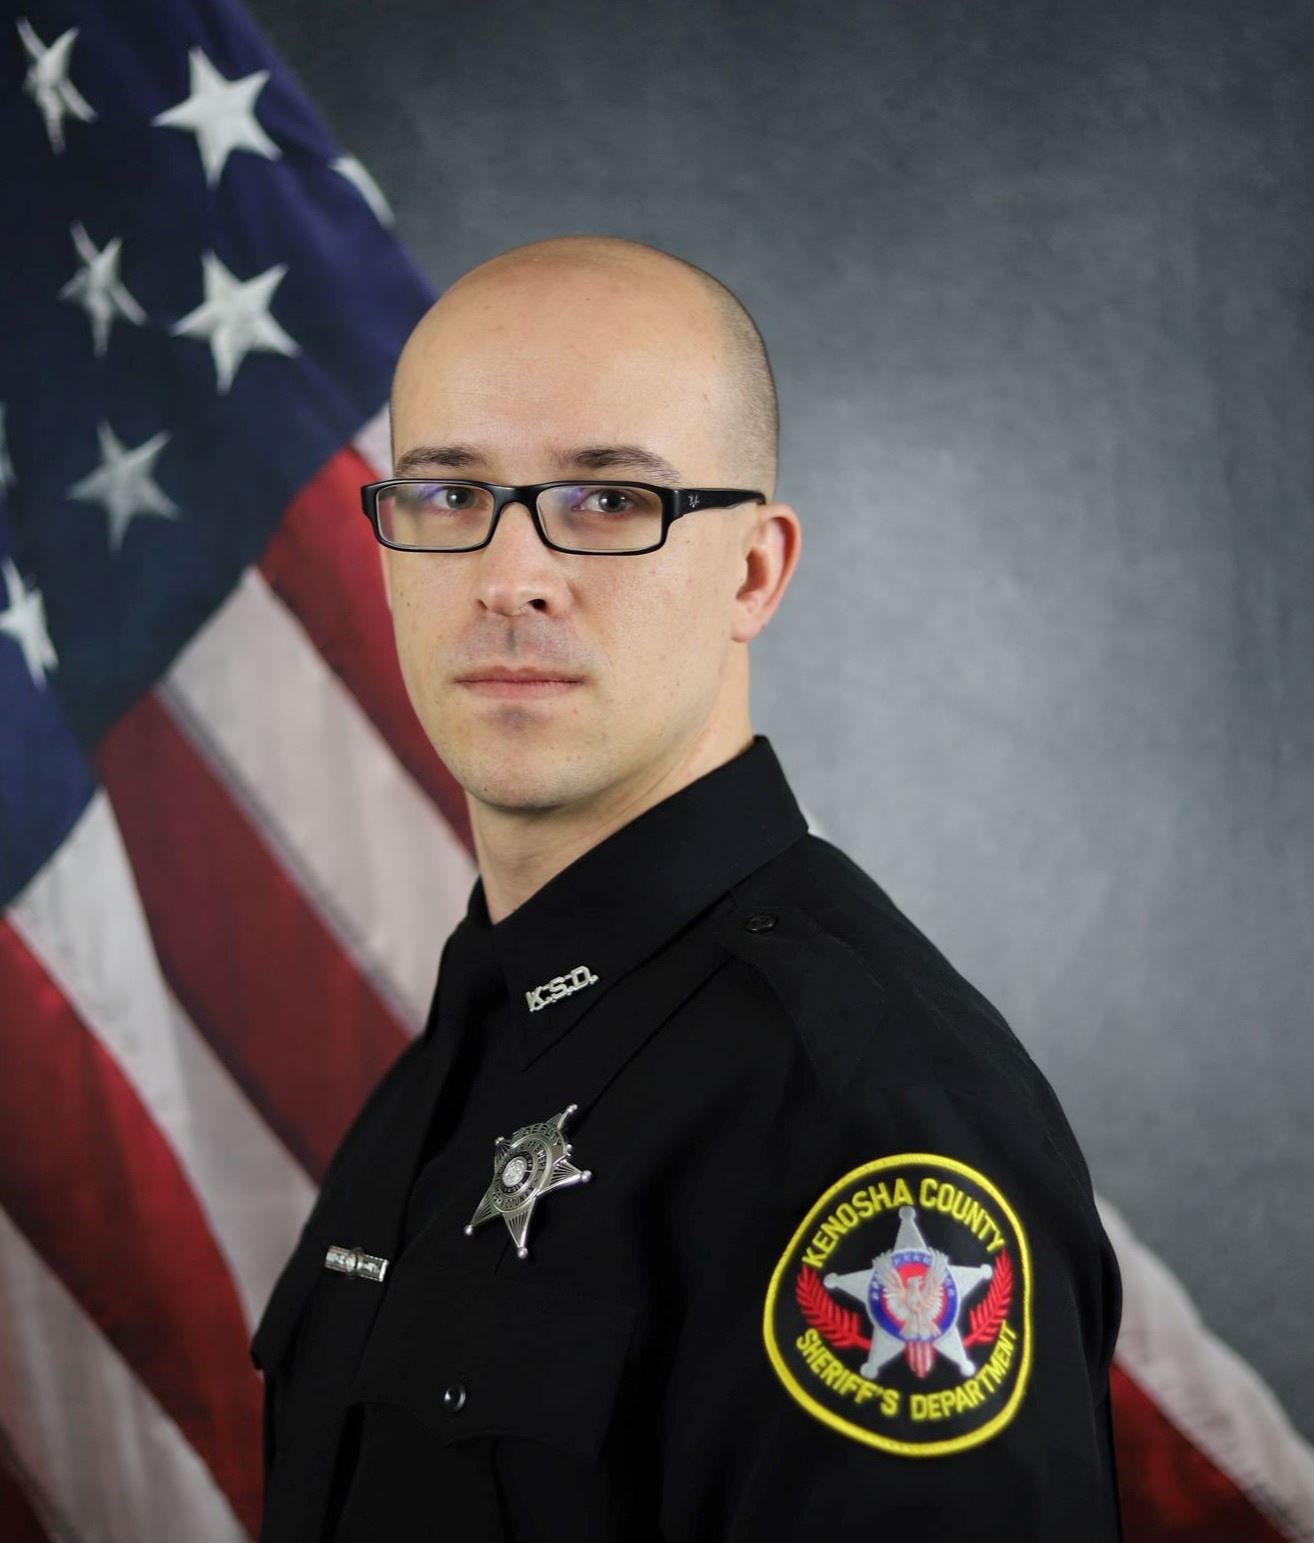 360 Deputy Christopher Bischoff